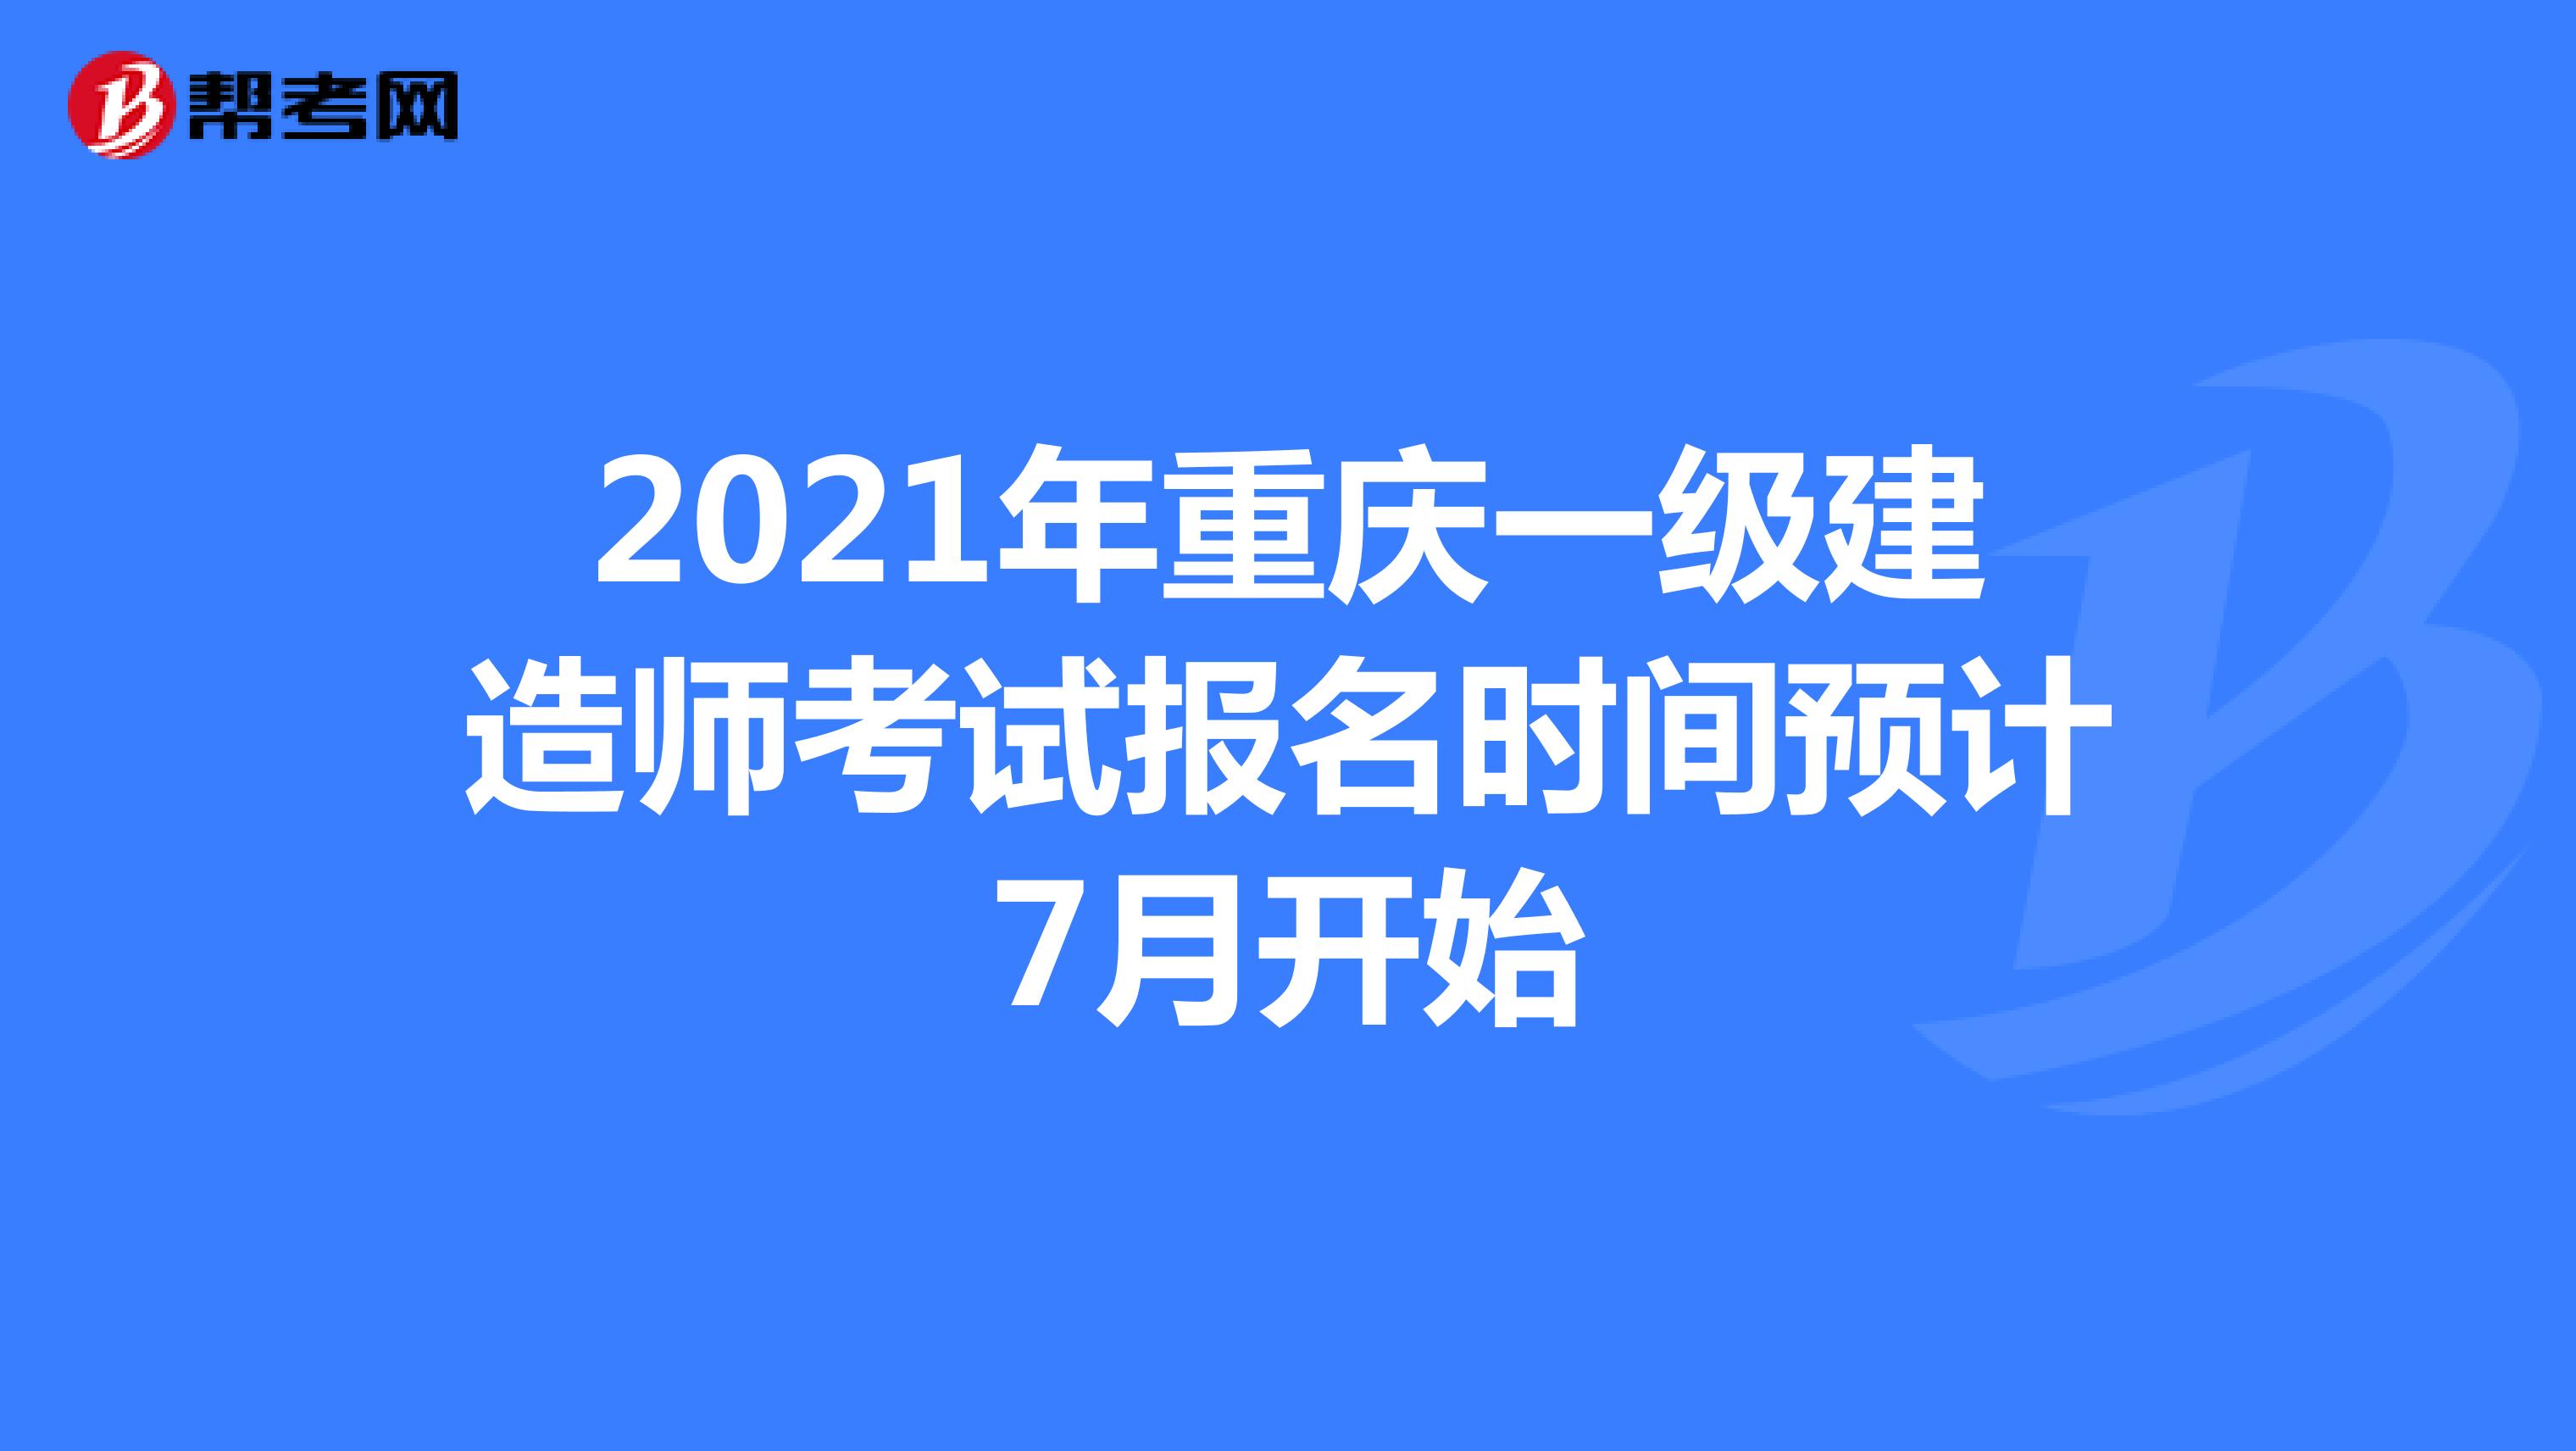 2021年重庆一级建造师考试报名时间预计7月开始